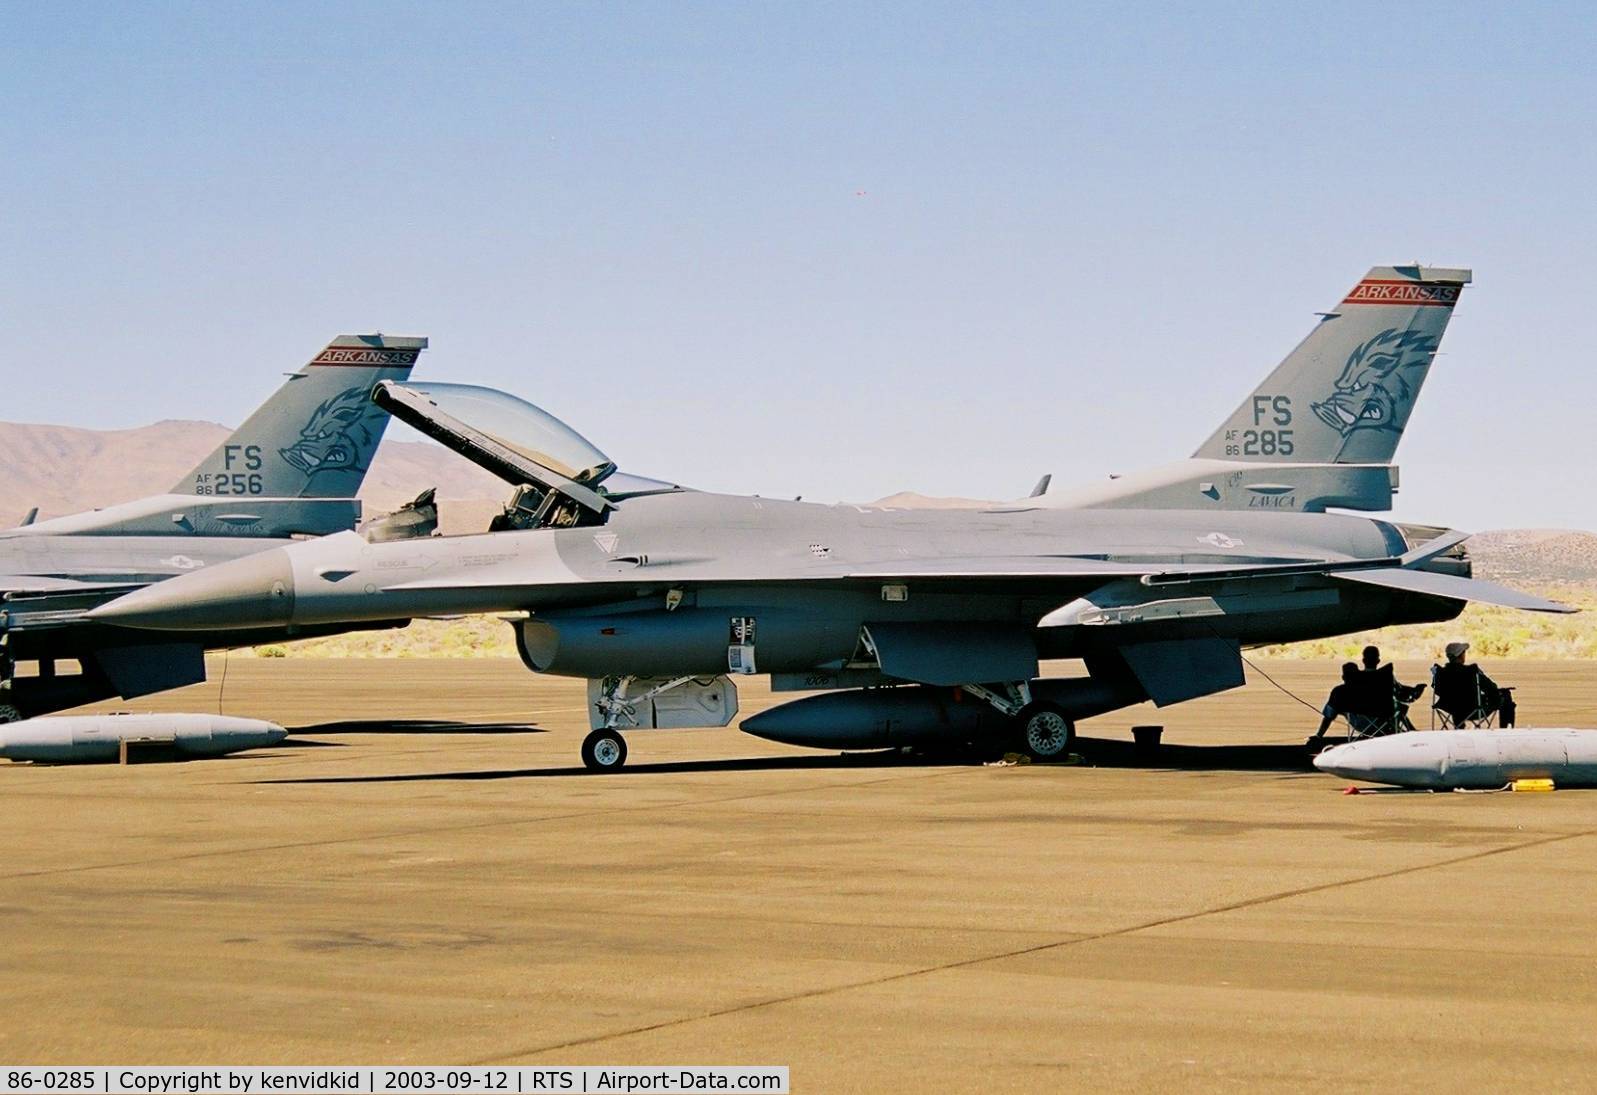 86-0285, 1986 General Dynamics F-16C Fighting Falcon C/N 5C-391, At the 2003 Reno Air Races.
Arkansas ANG.